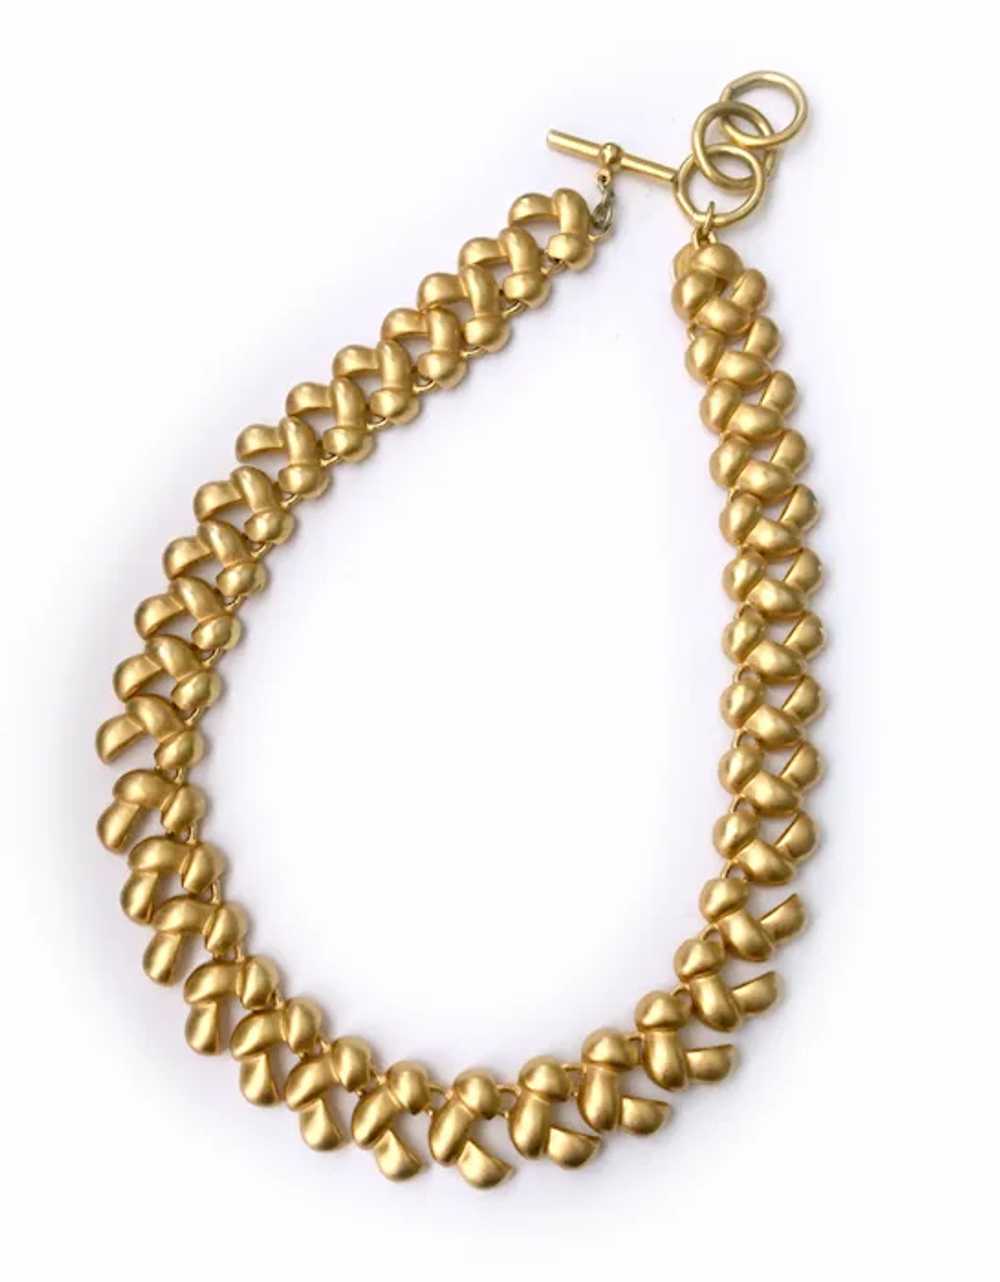 Anne Klein Golden 'Braid' Necklace - image 4